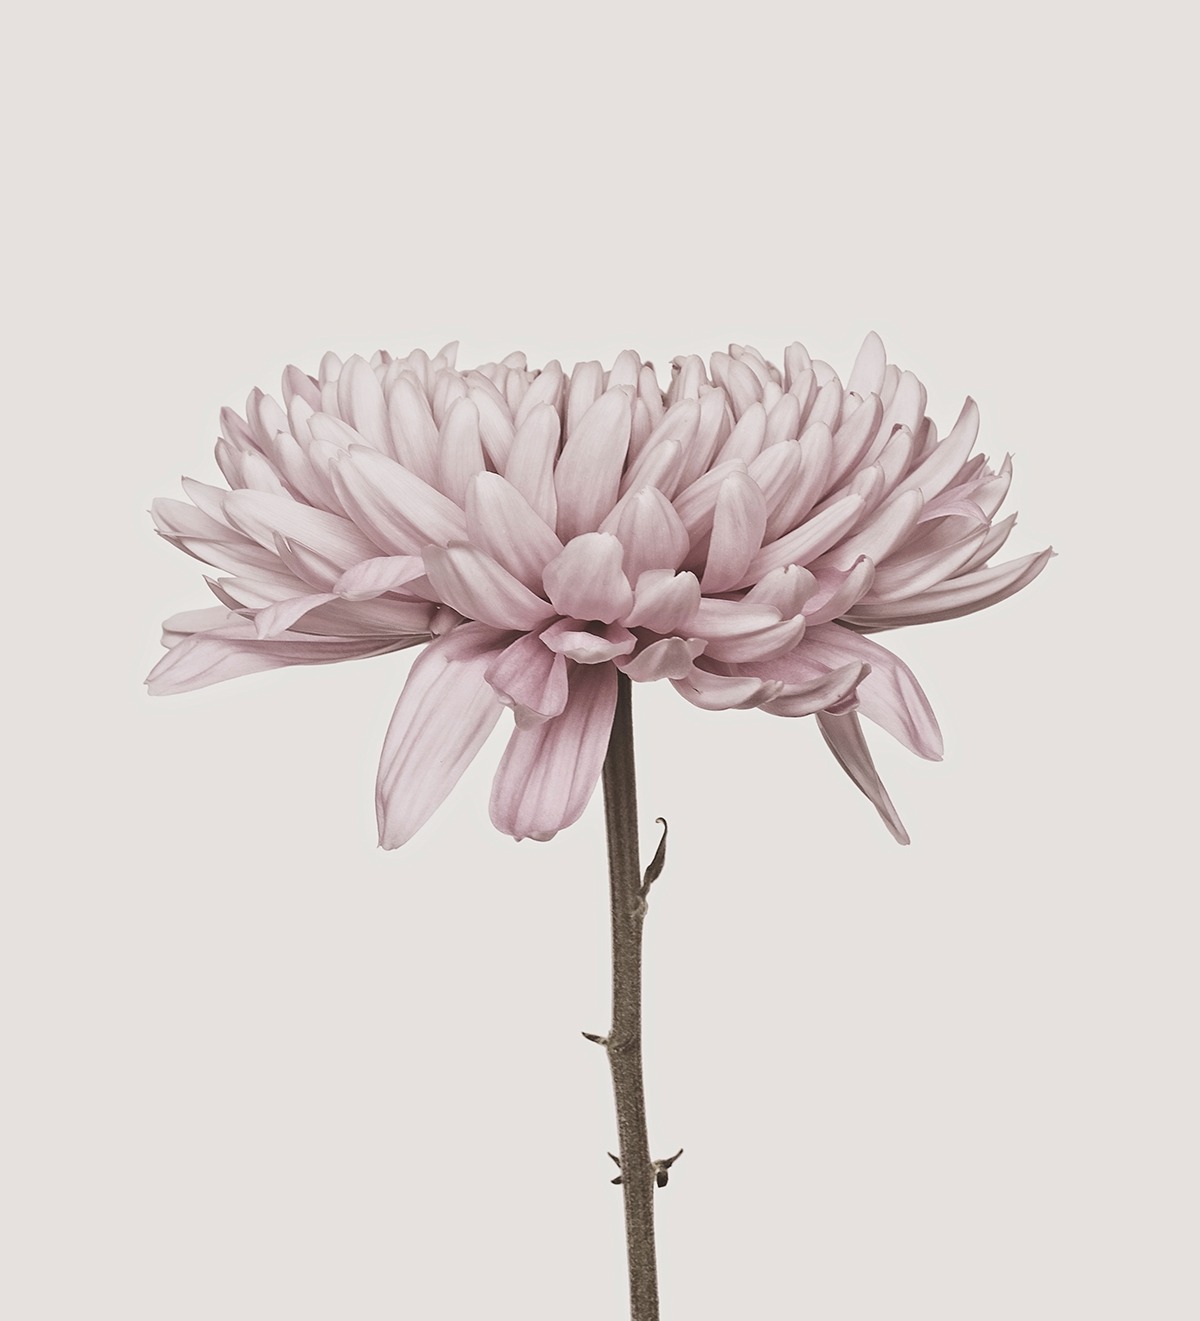 floralls:    Chrysanthemum    by Â Bettina GÃ¼ber    